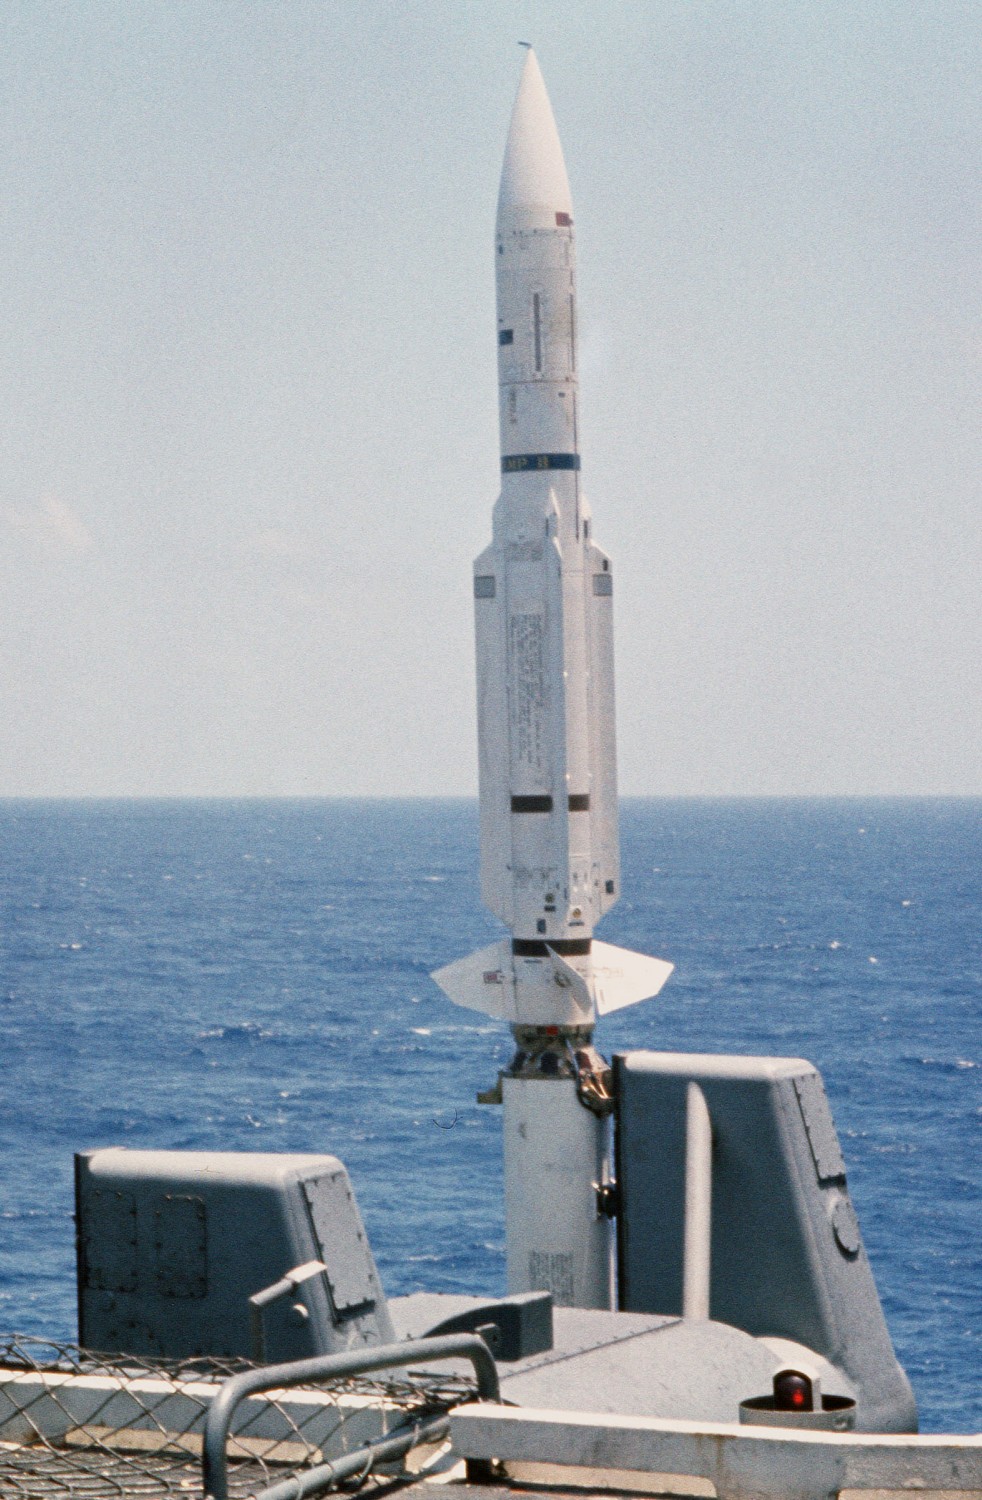 cv-66 uss america kitty hawk class aircraft carrier us navy rim-67b standard sm-2er missile 24